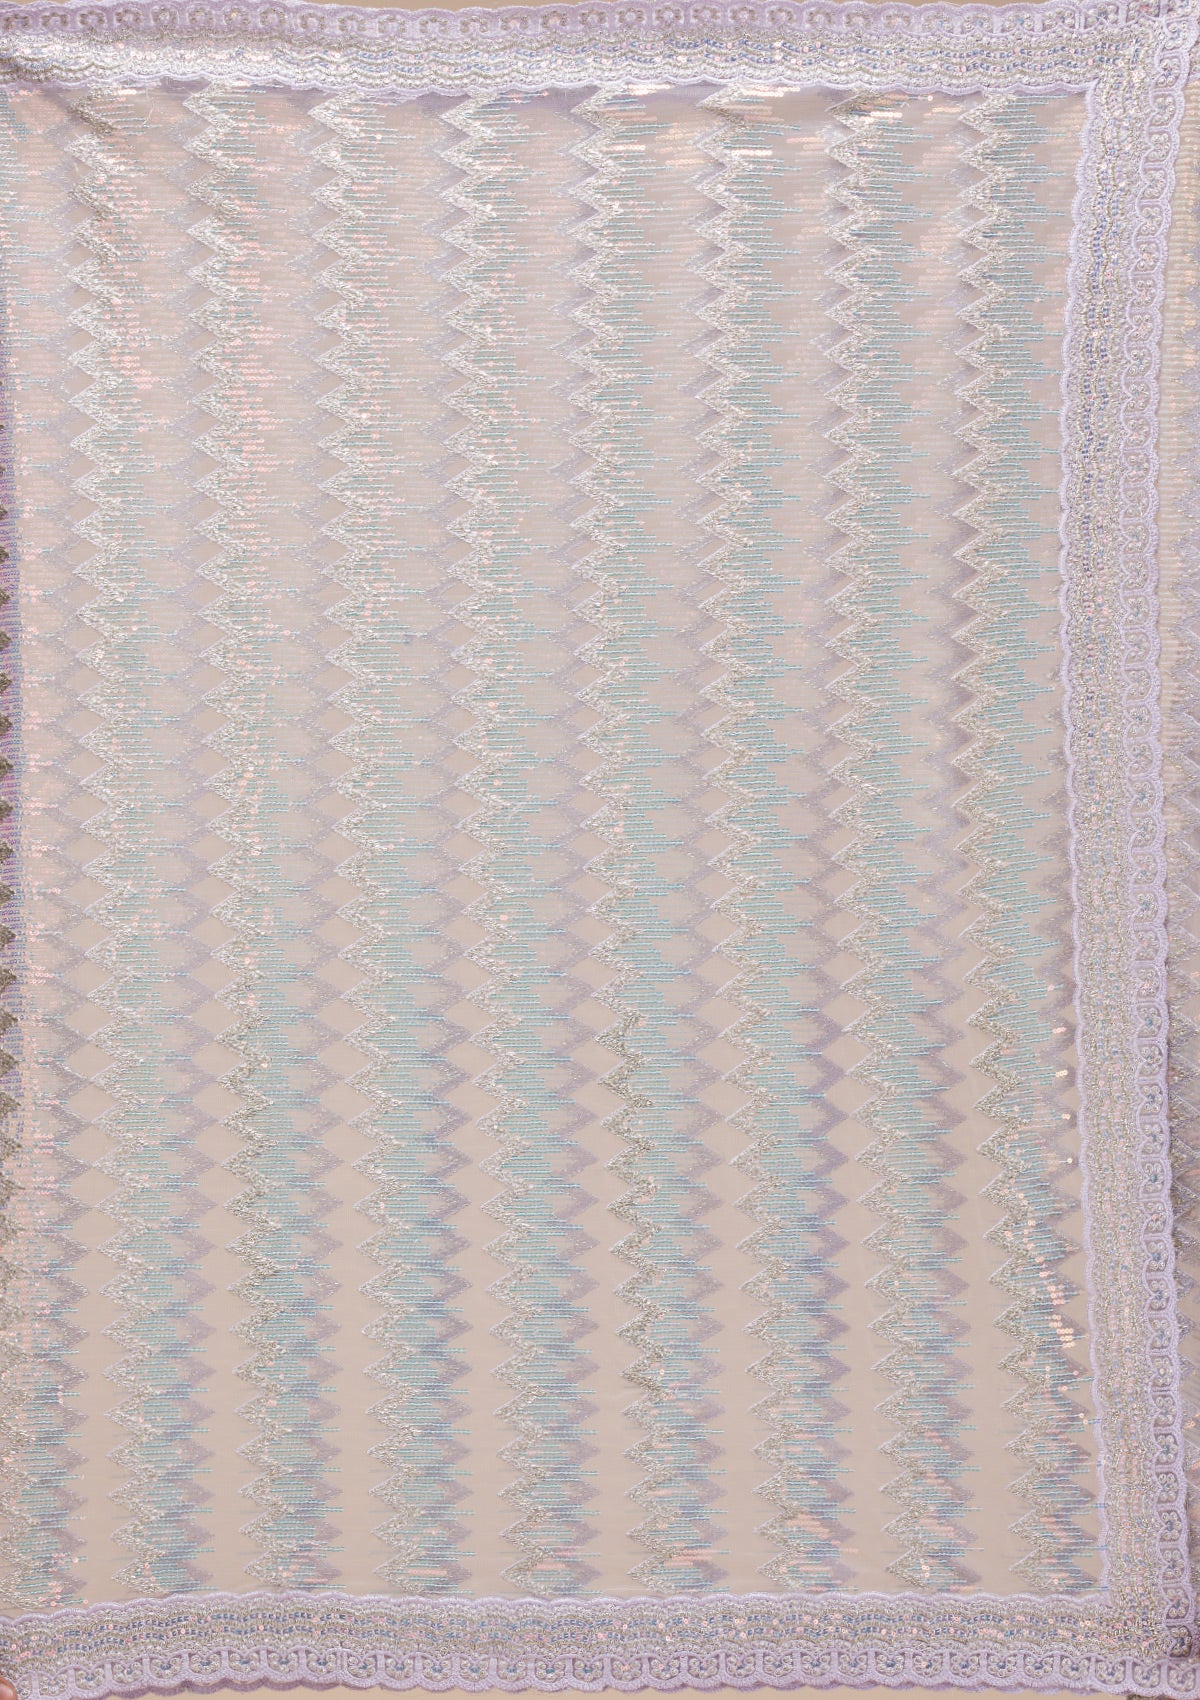 Lavender Sequins Tissue Saree